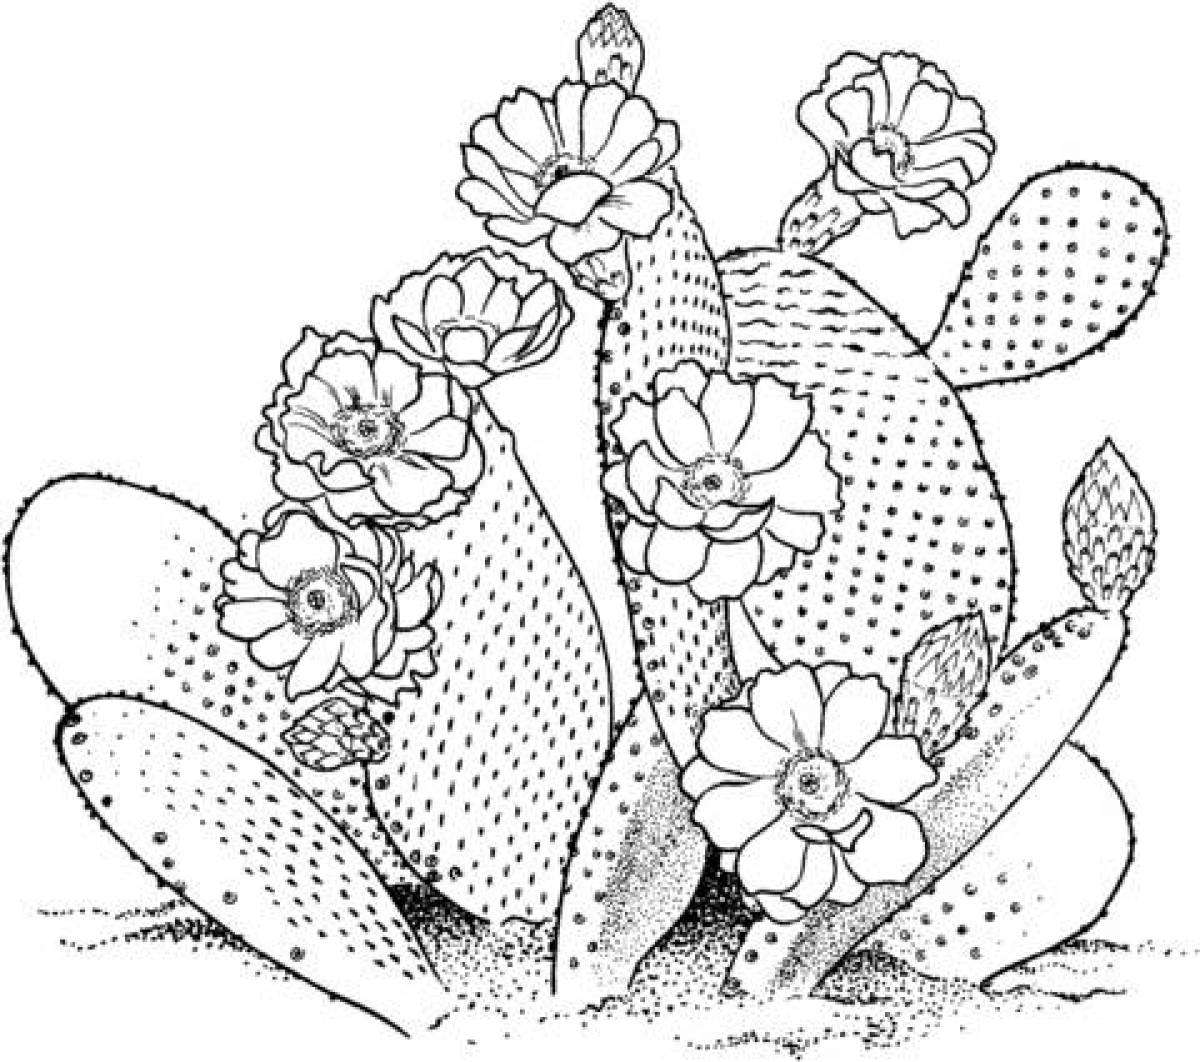 Cactus in flowers